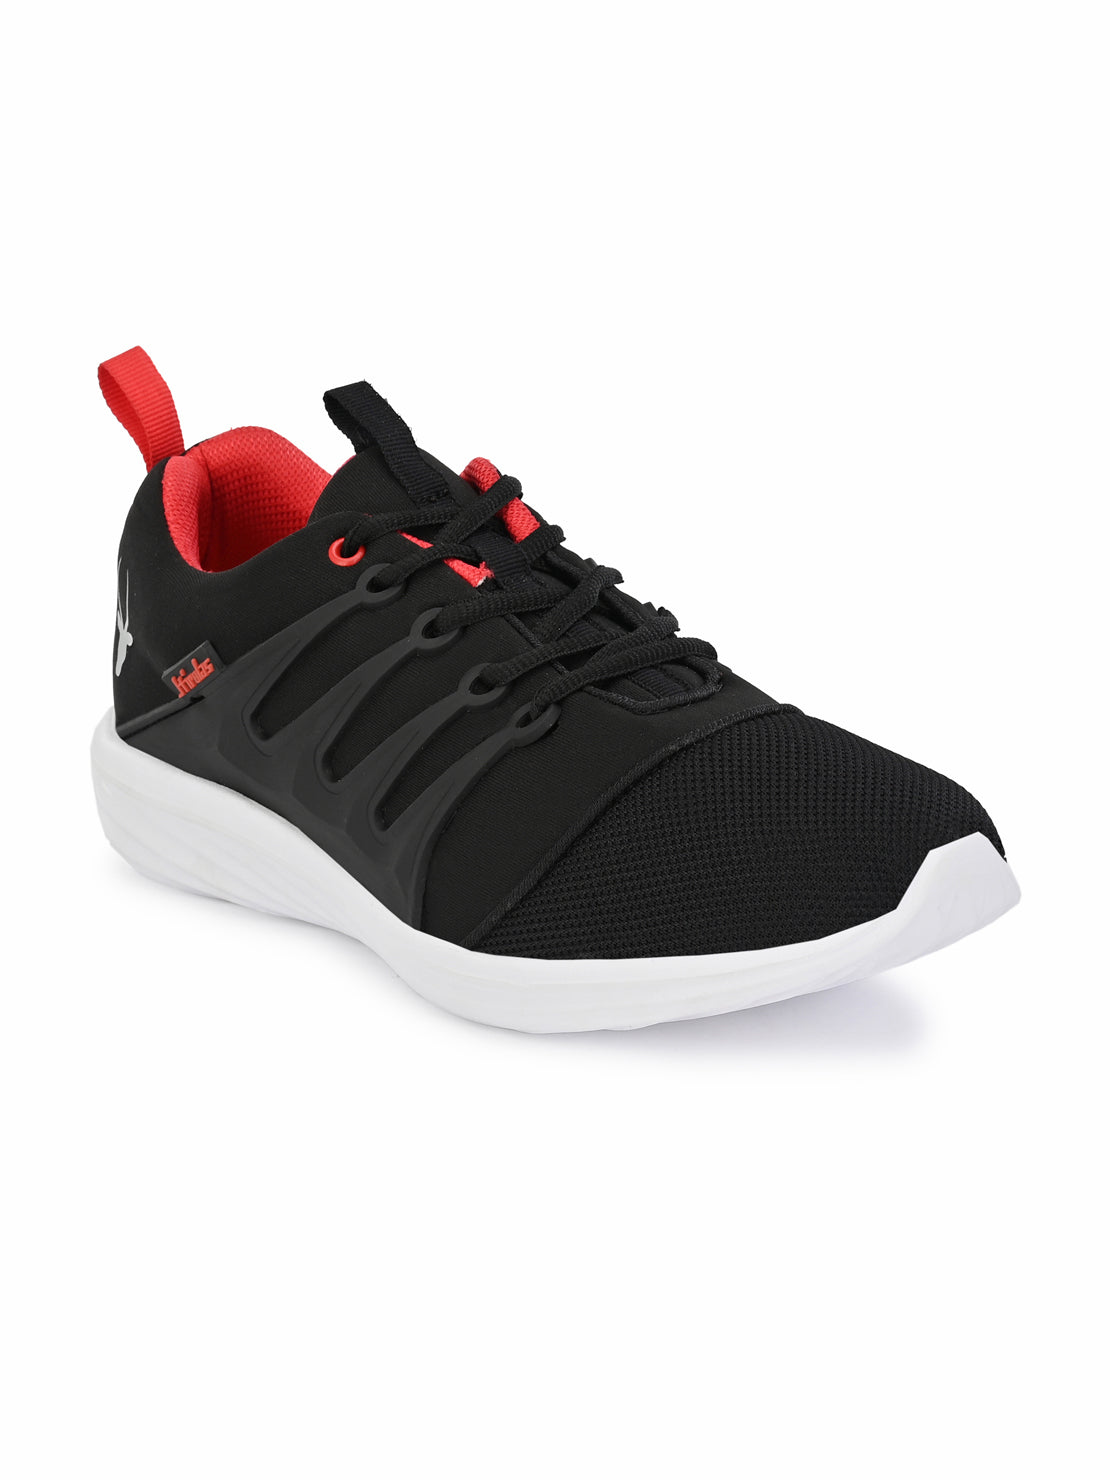 Hirolas® Men's Black Mesh Running/Walking/Gym Slip On Sneaker Sport Shoes (HRL2004BLR)